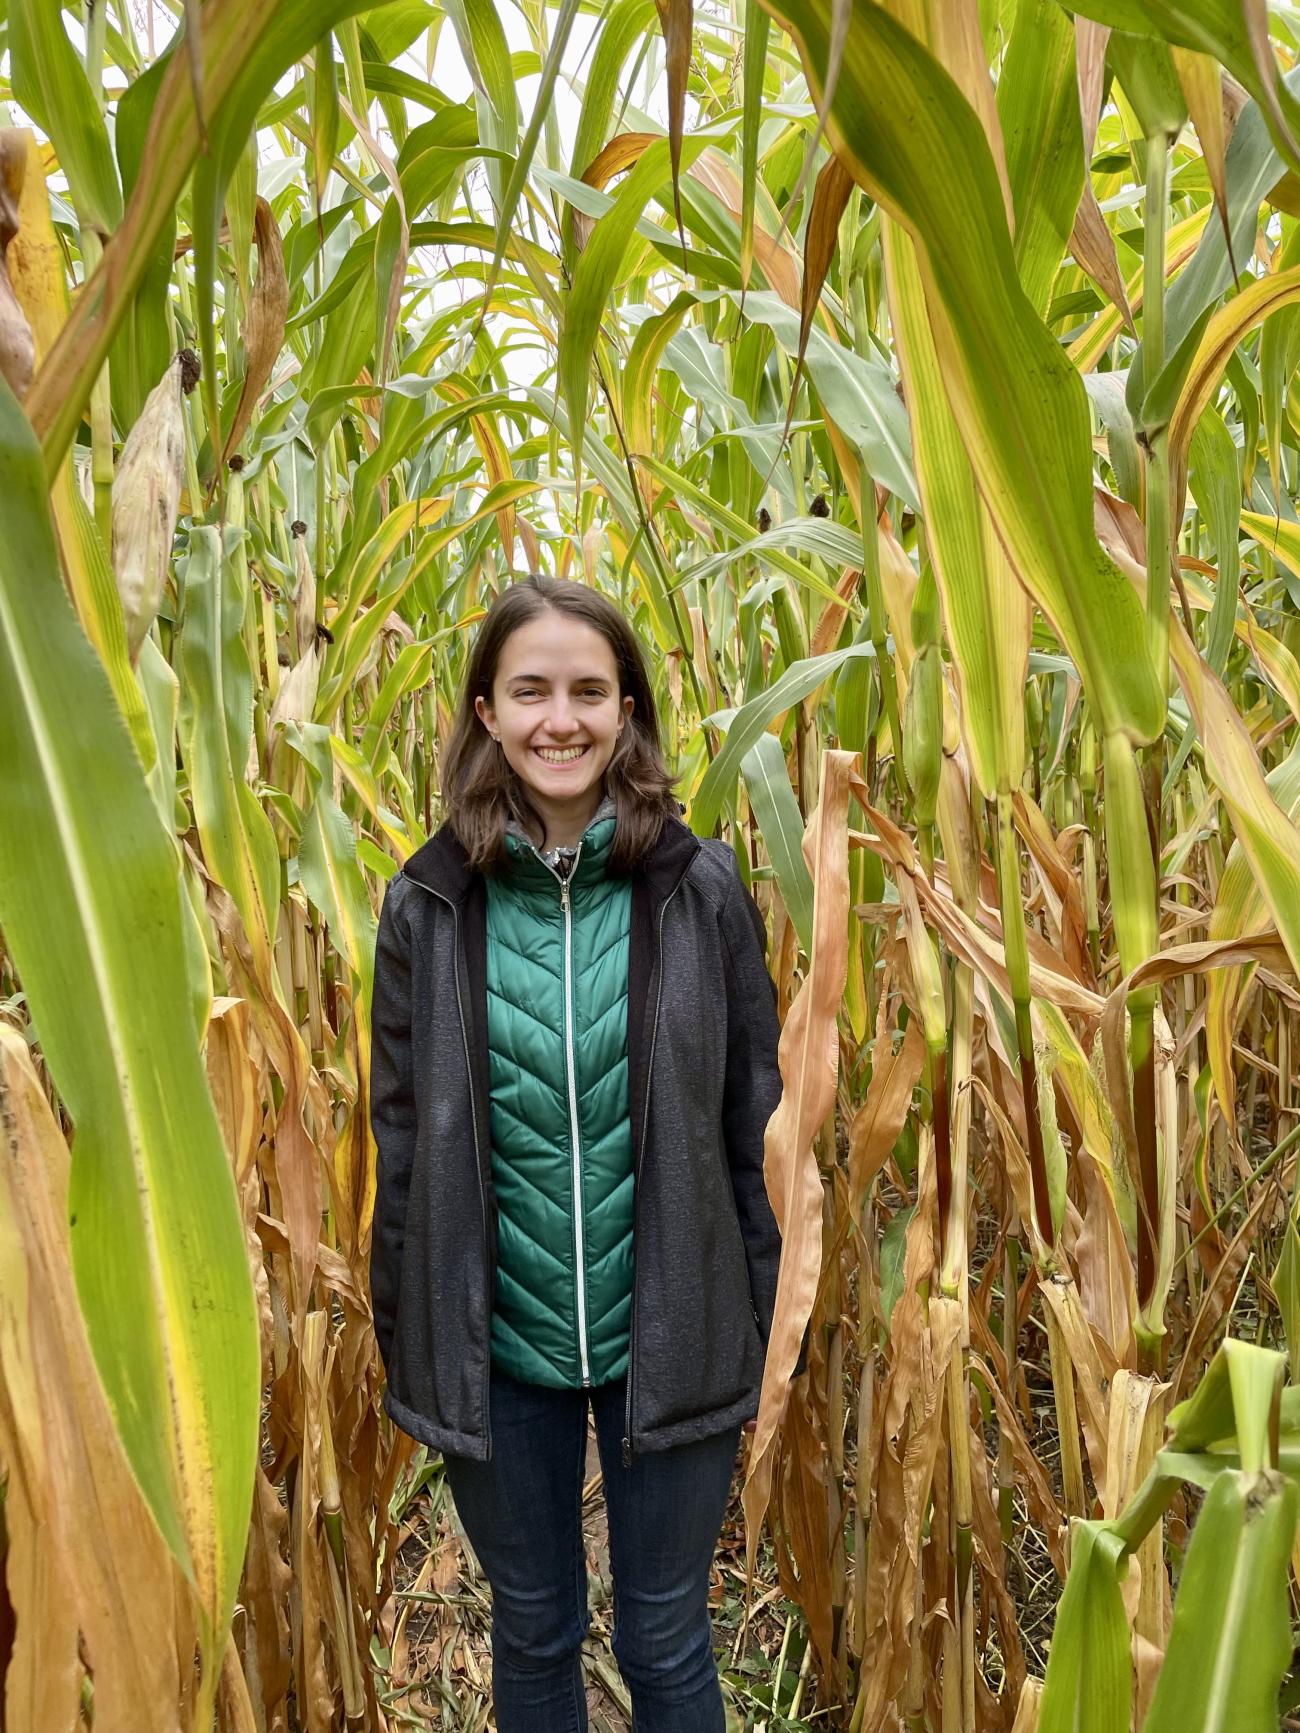 Rose Una stands smiling in a corn field